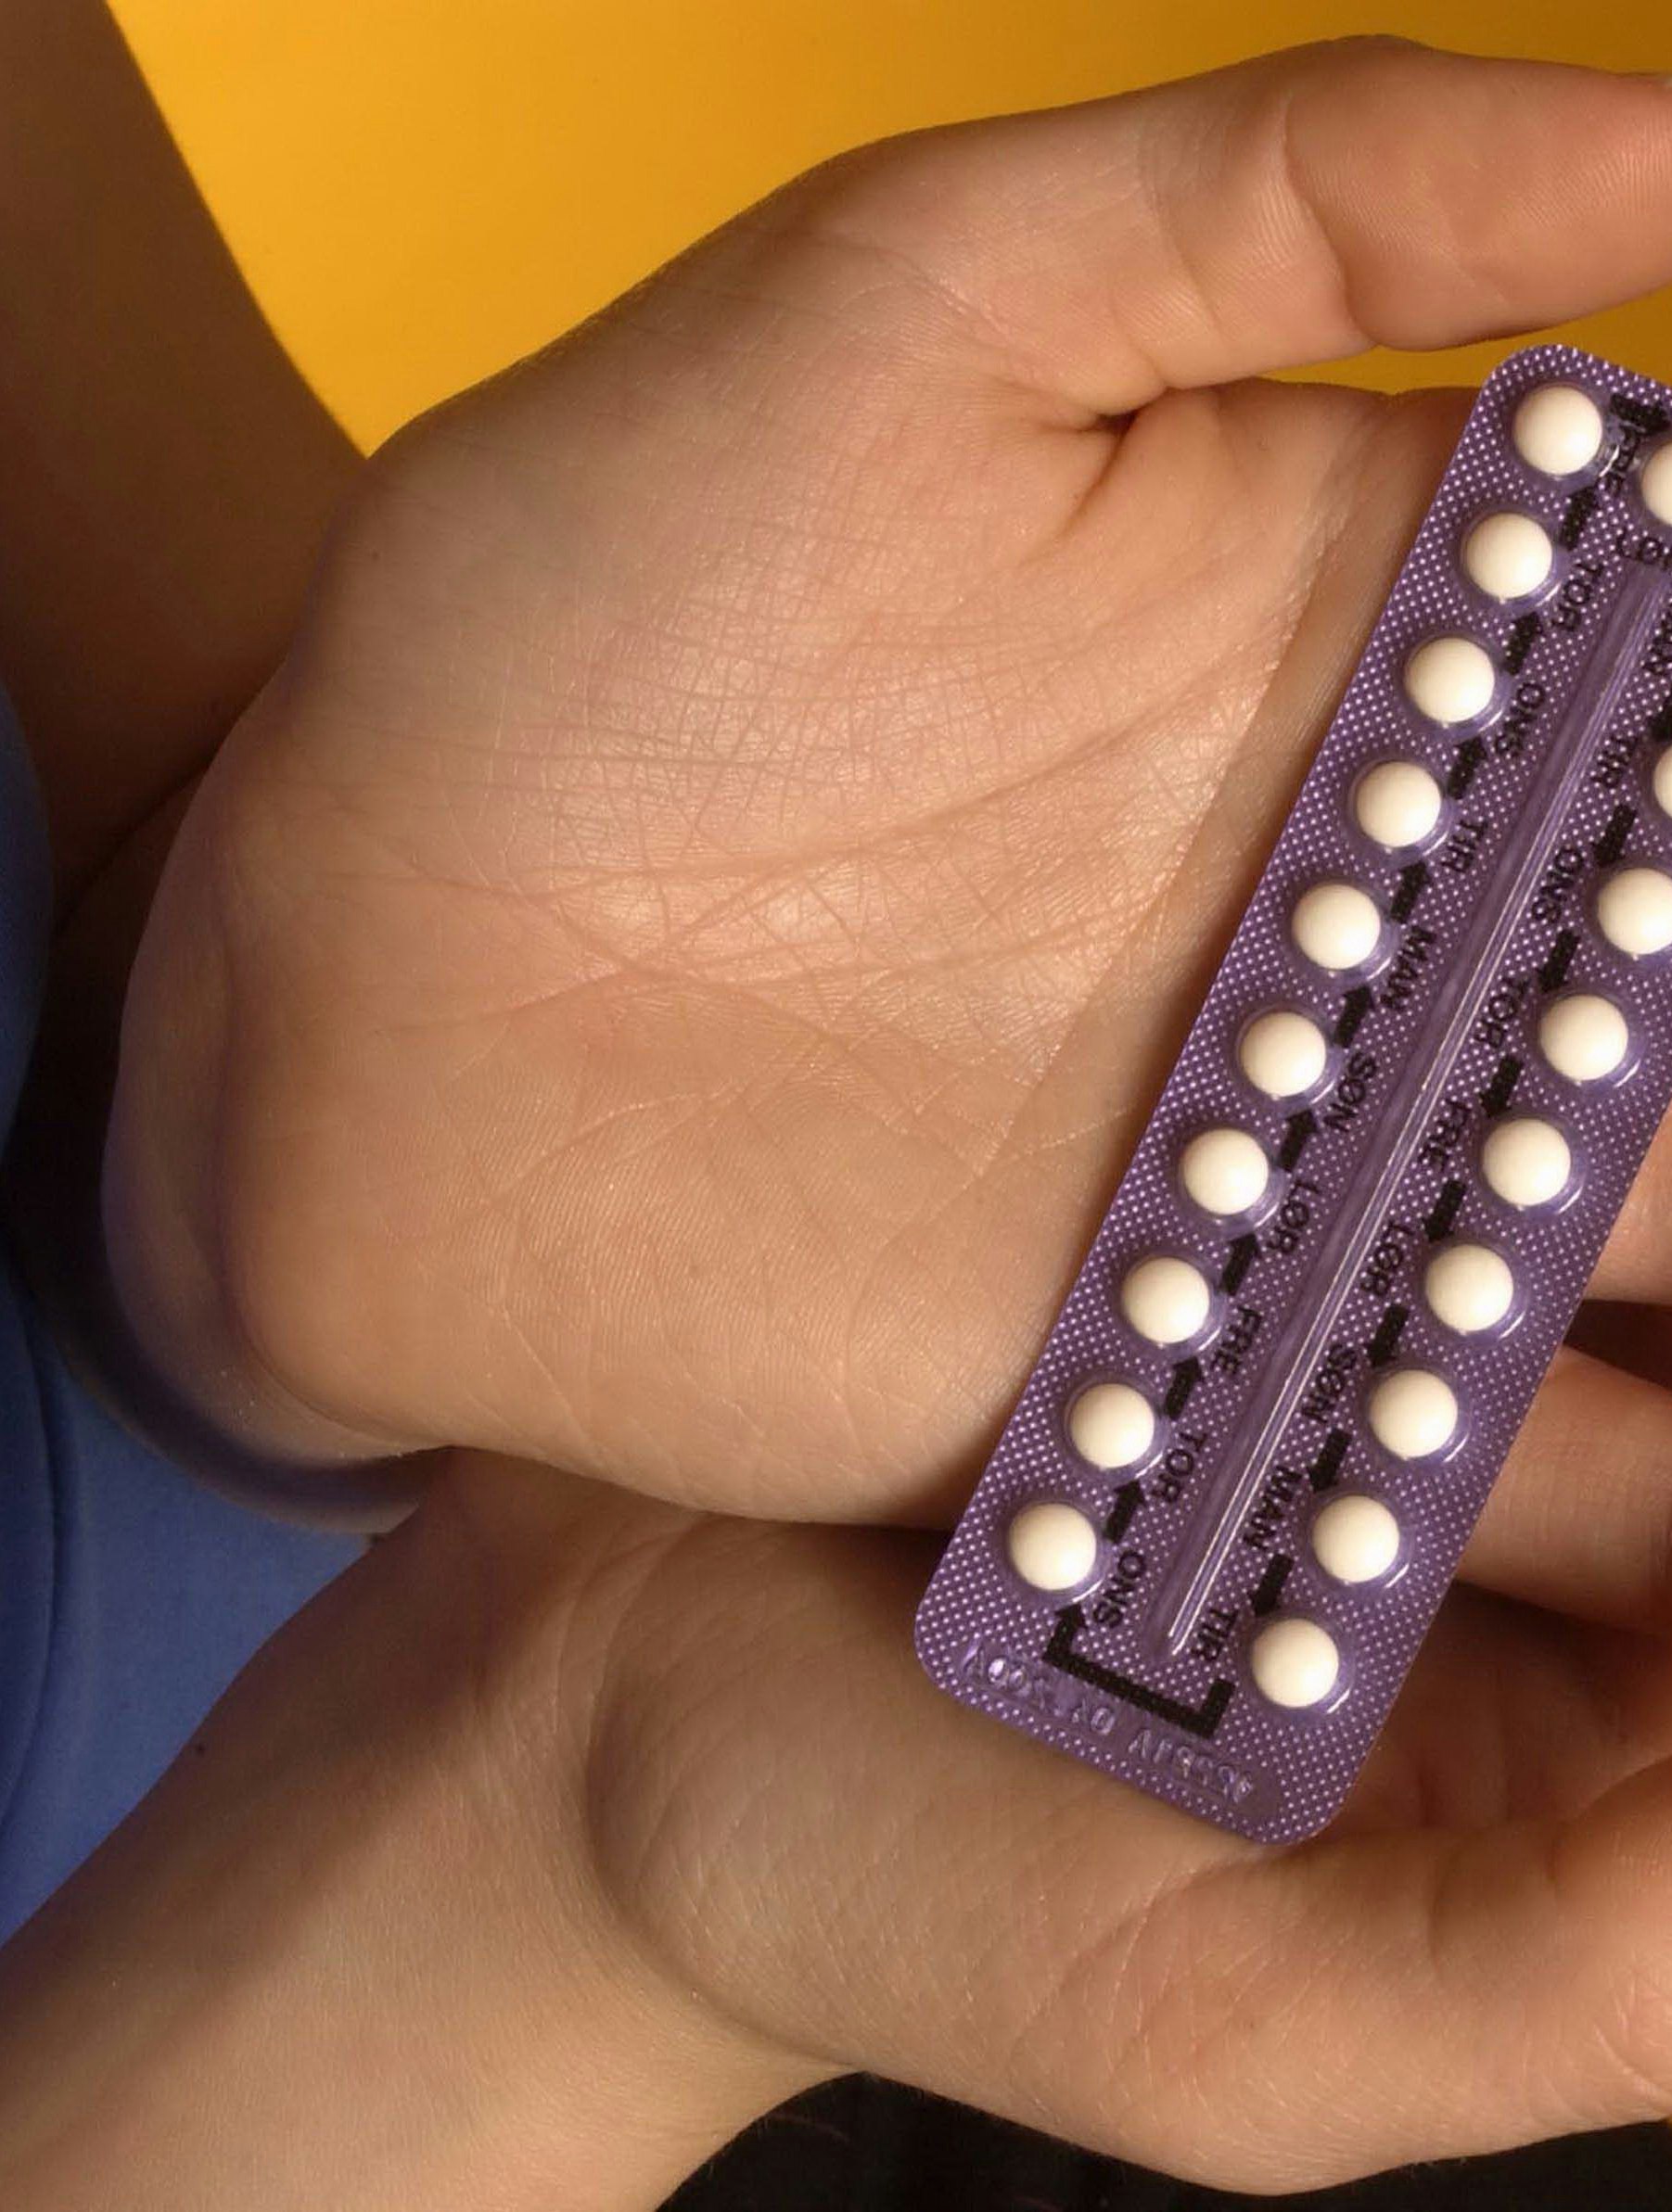 Flere kvinder vælger p-pillen fra 